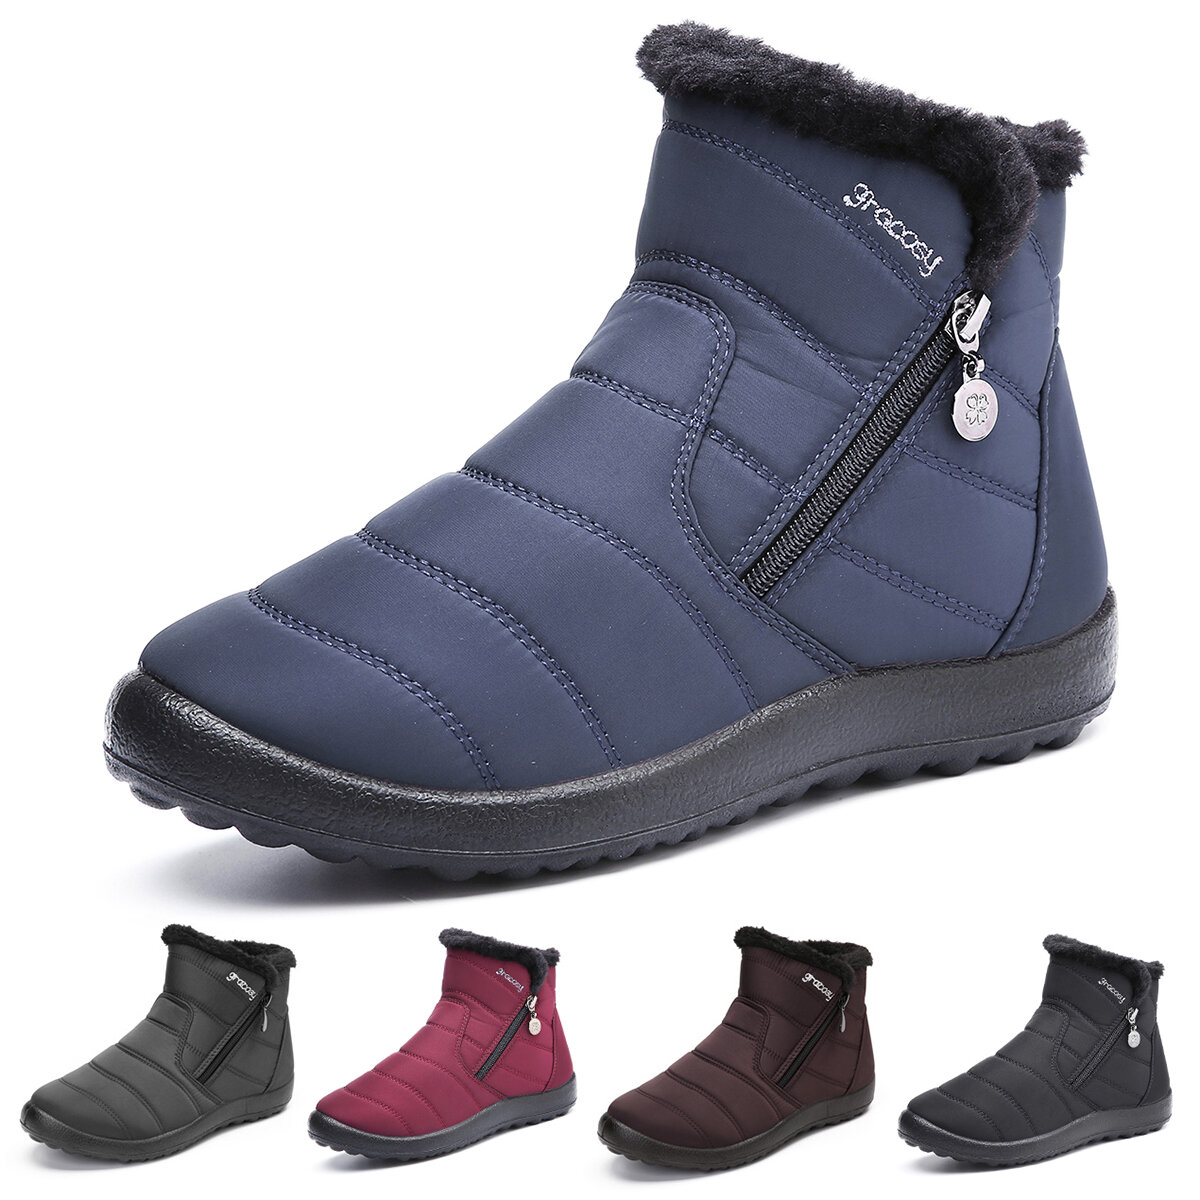 Botas de neve quentes Gracosy para mulheres, botas de inverno antiderrapantes, impermeáveis, forro de pele sintética, sapatos para exteriores.